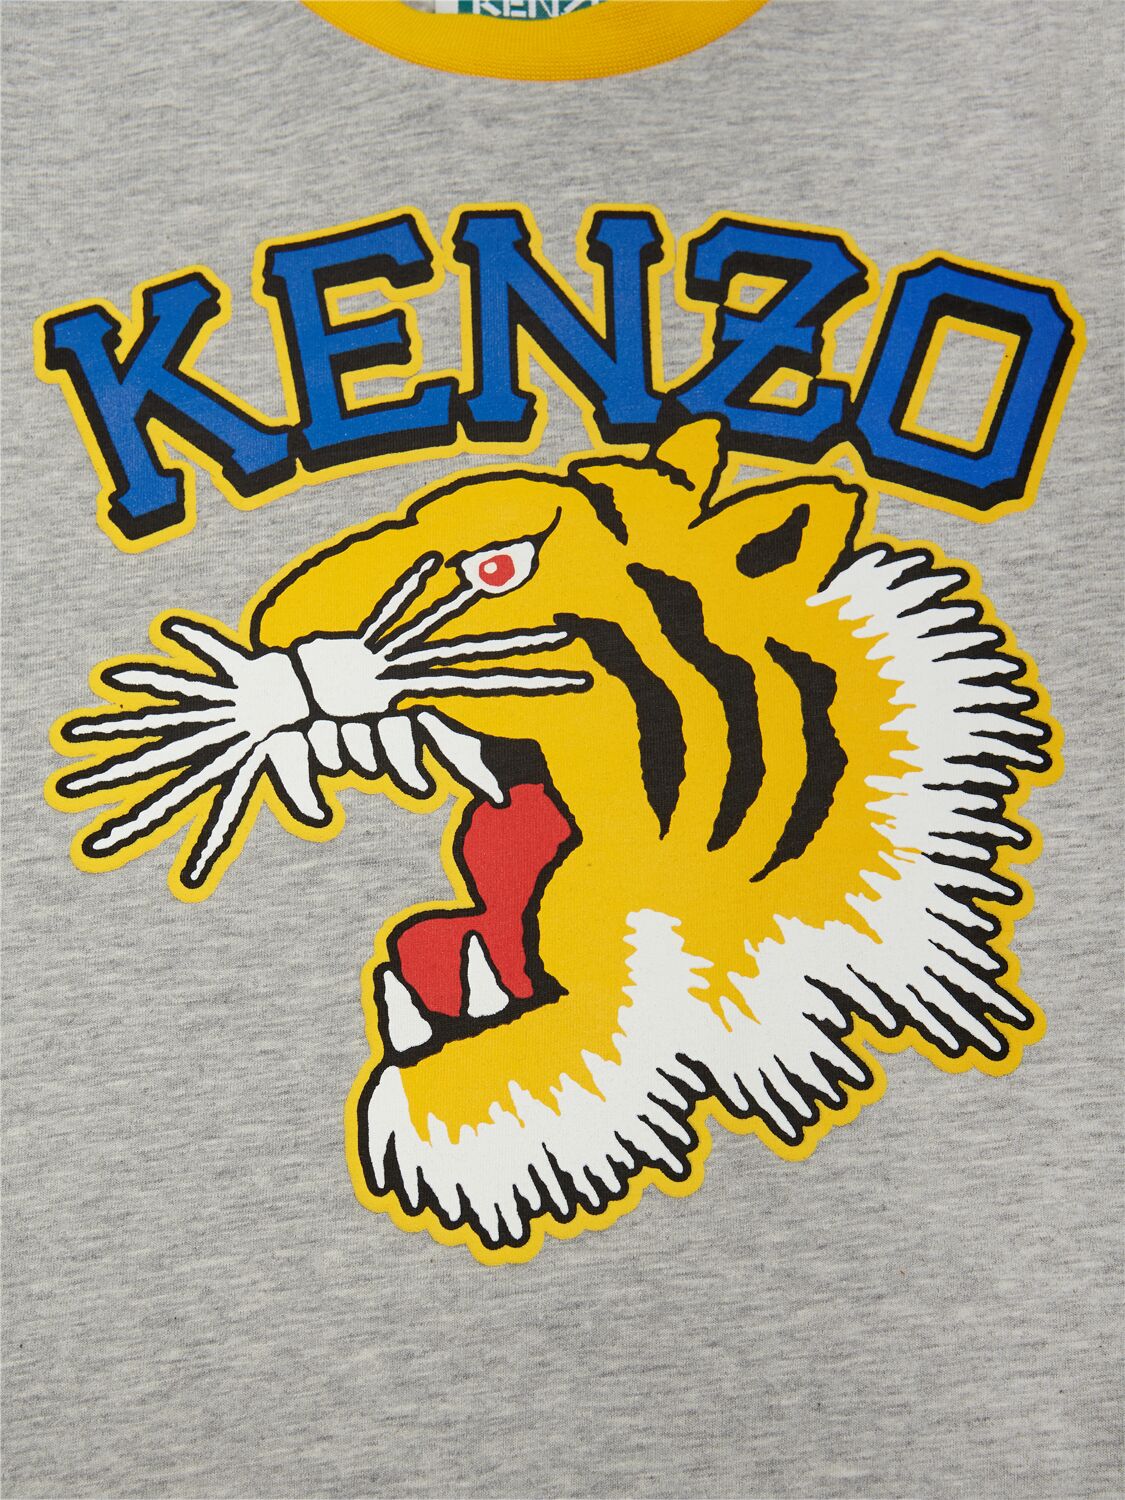 Shop Kenzo Cotton Jersey T-shirt In Grey